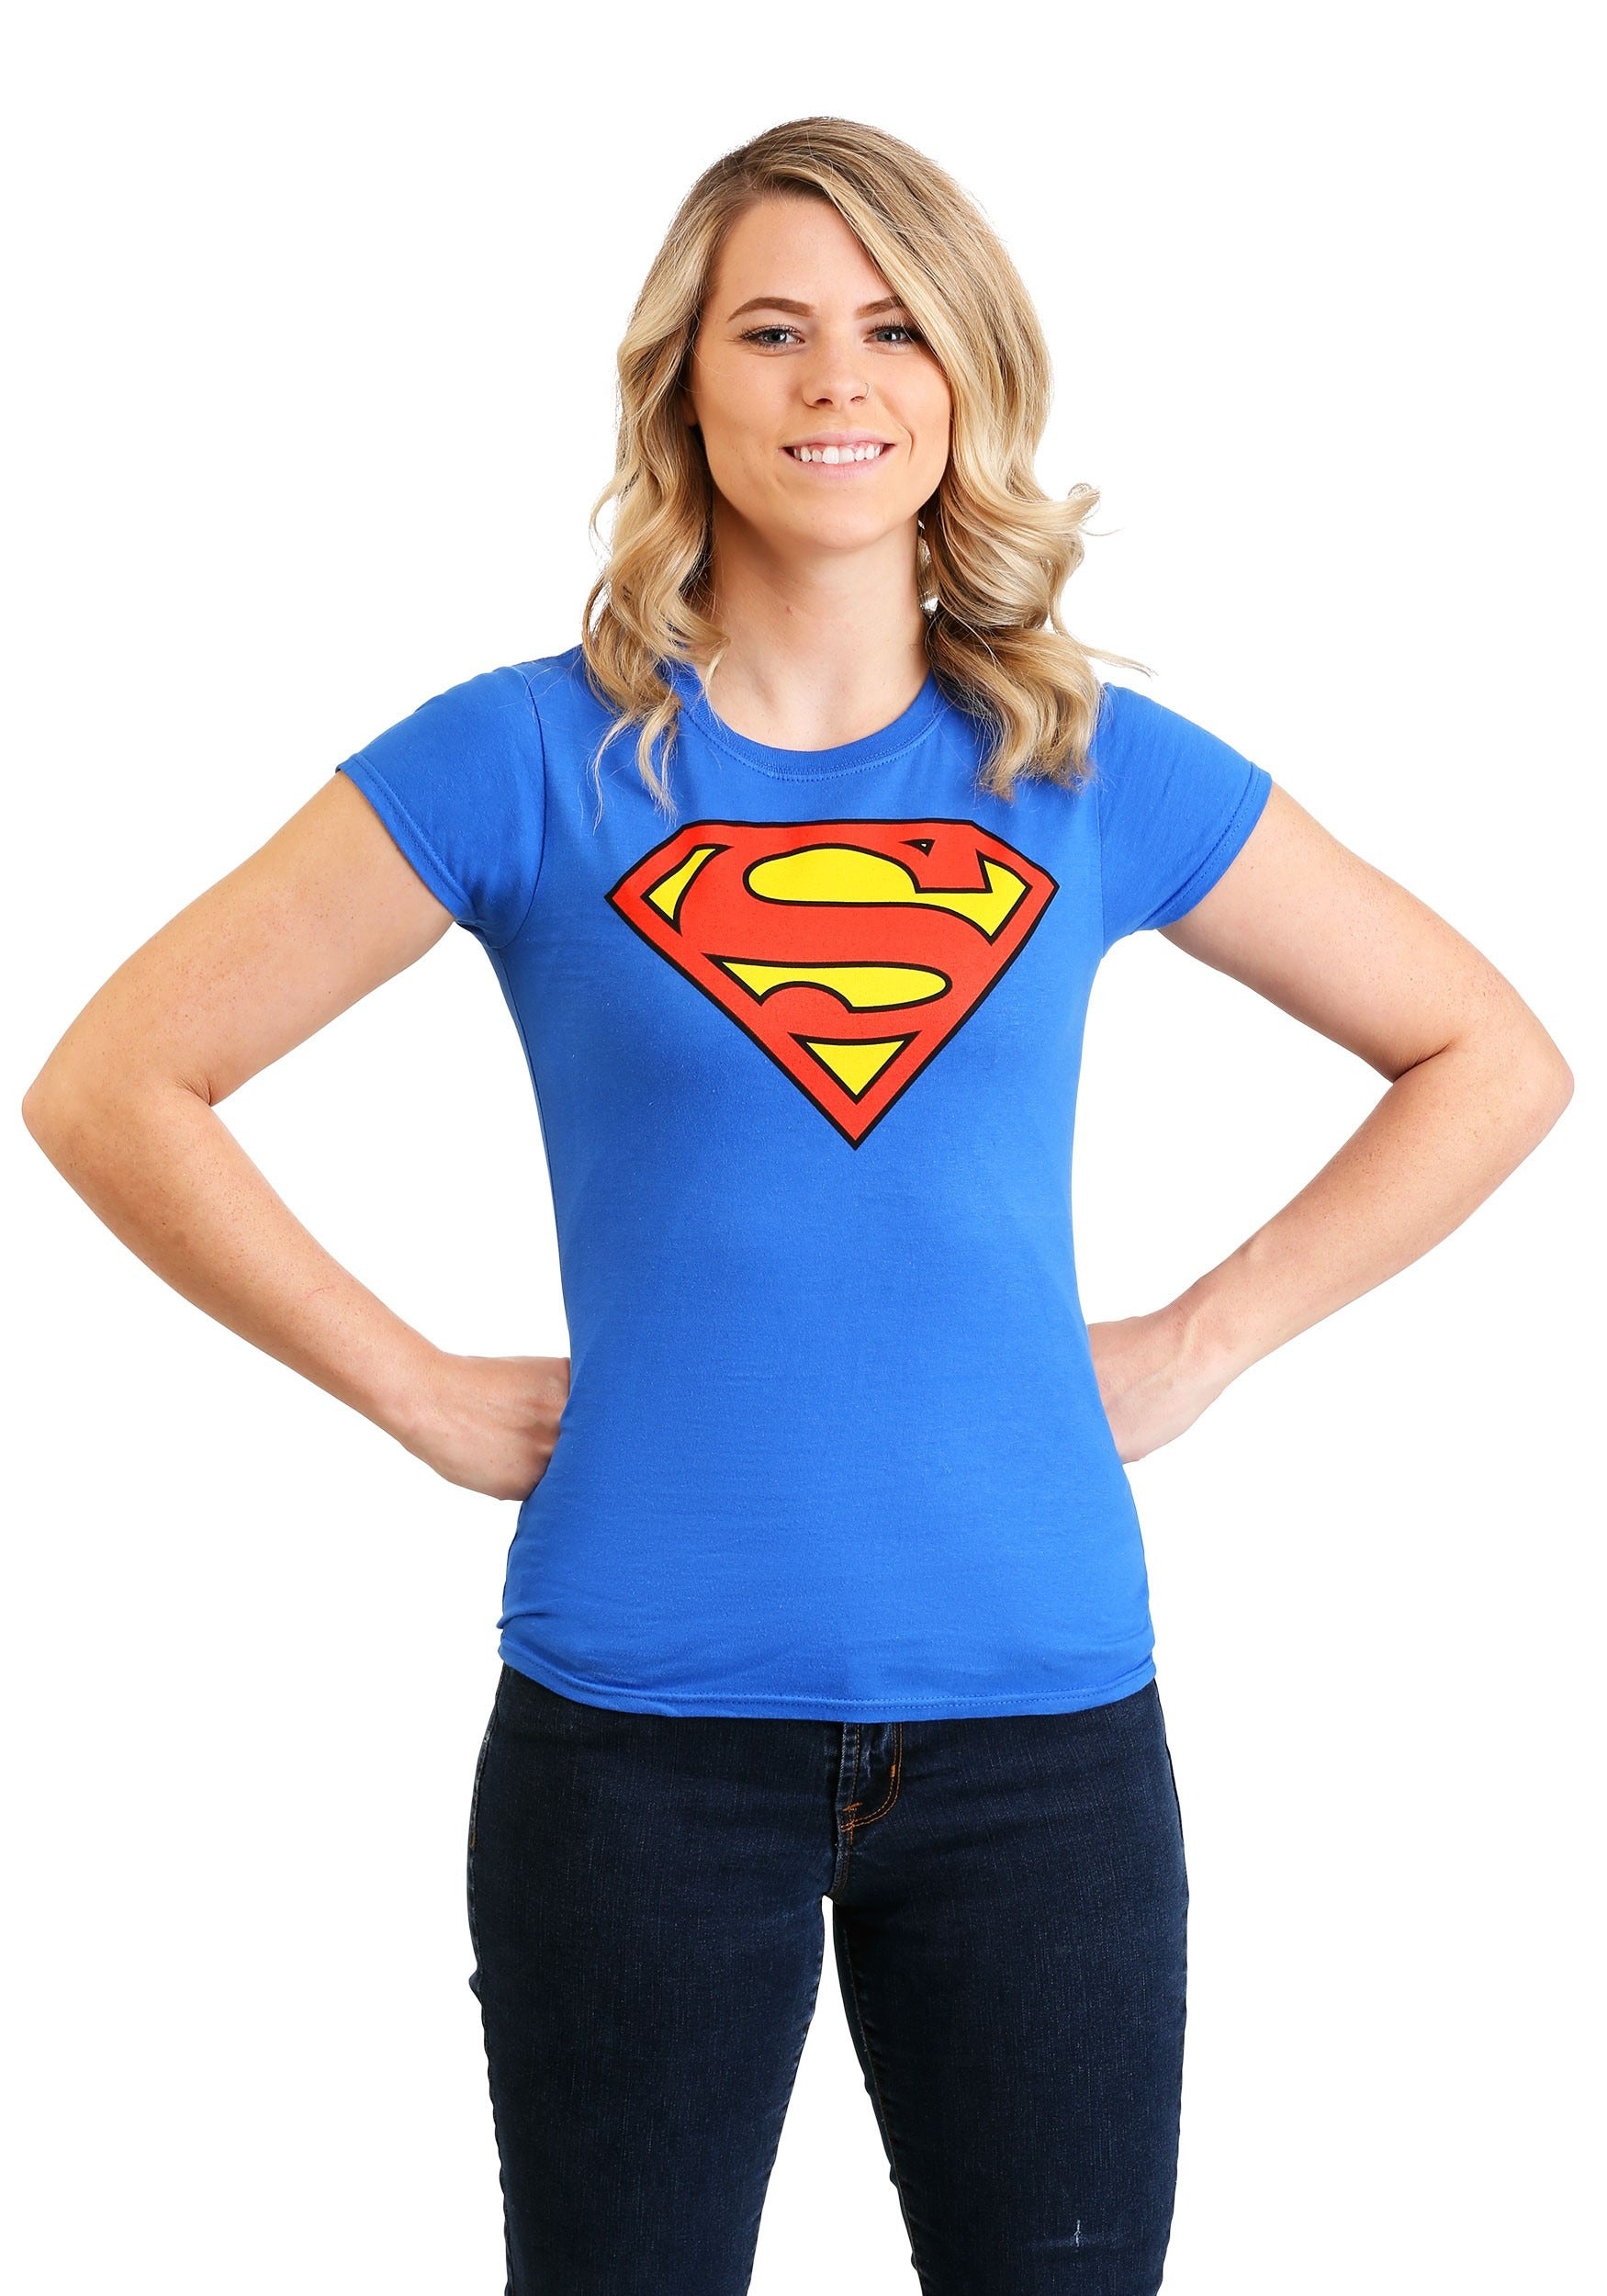 Oneerlijkheid helpen Waarschuwing Superman tshirt for women, av 72% betydande affär - sontuscolores.com